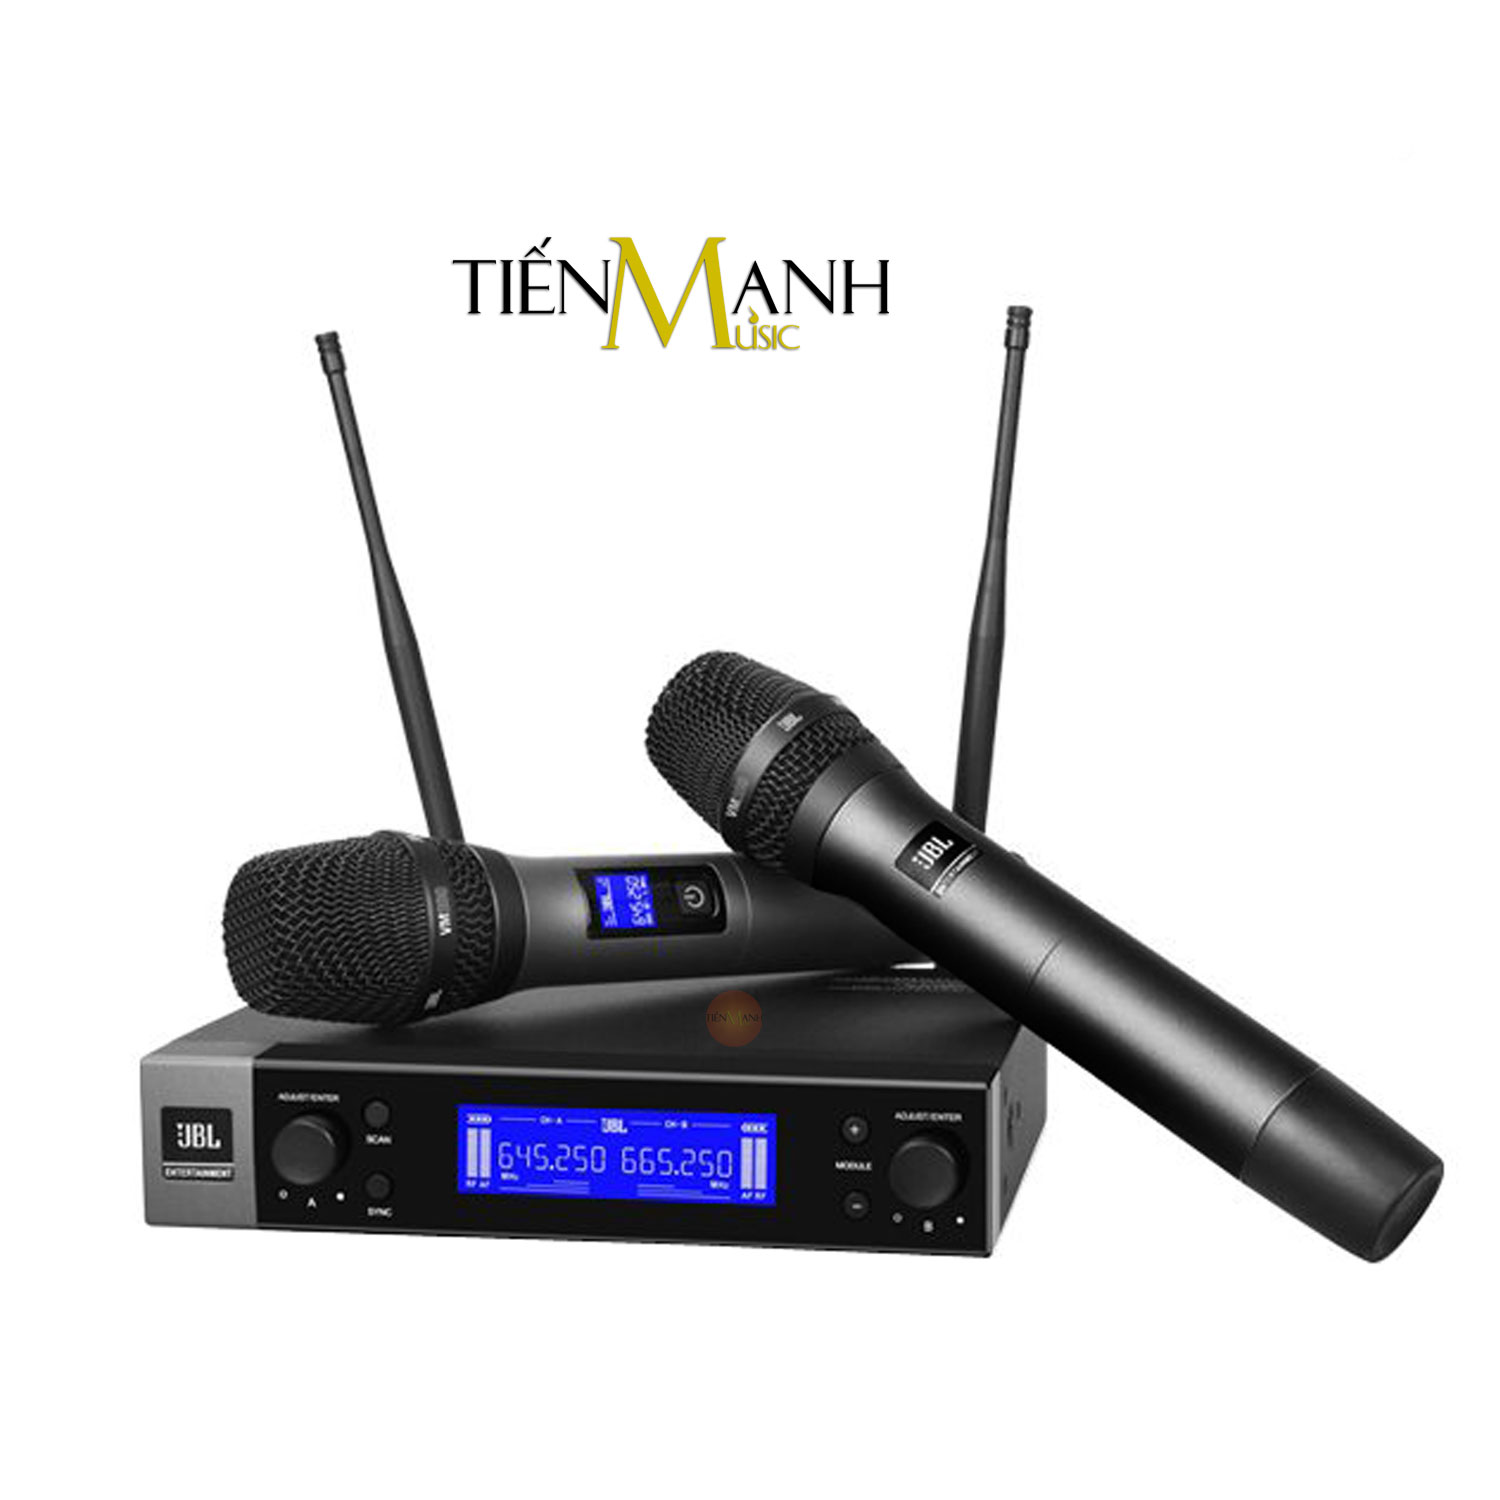 Bộ 2 Micro Không Dây JBL VM200 - Mic Cầm Tay Vocal Microphone Karaoke Wireless Hàng Chính Hãng - Kèm Móng Gẩy DreamMaker